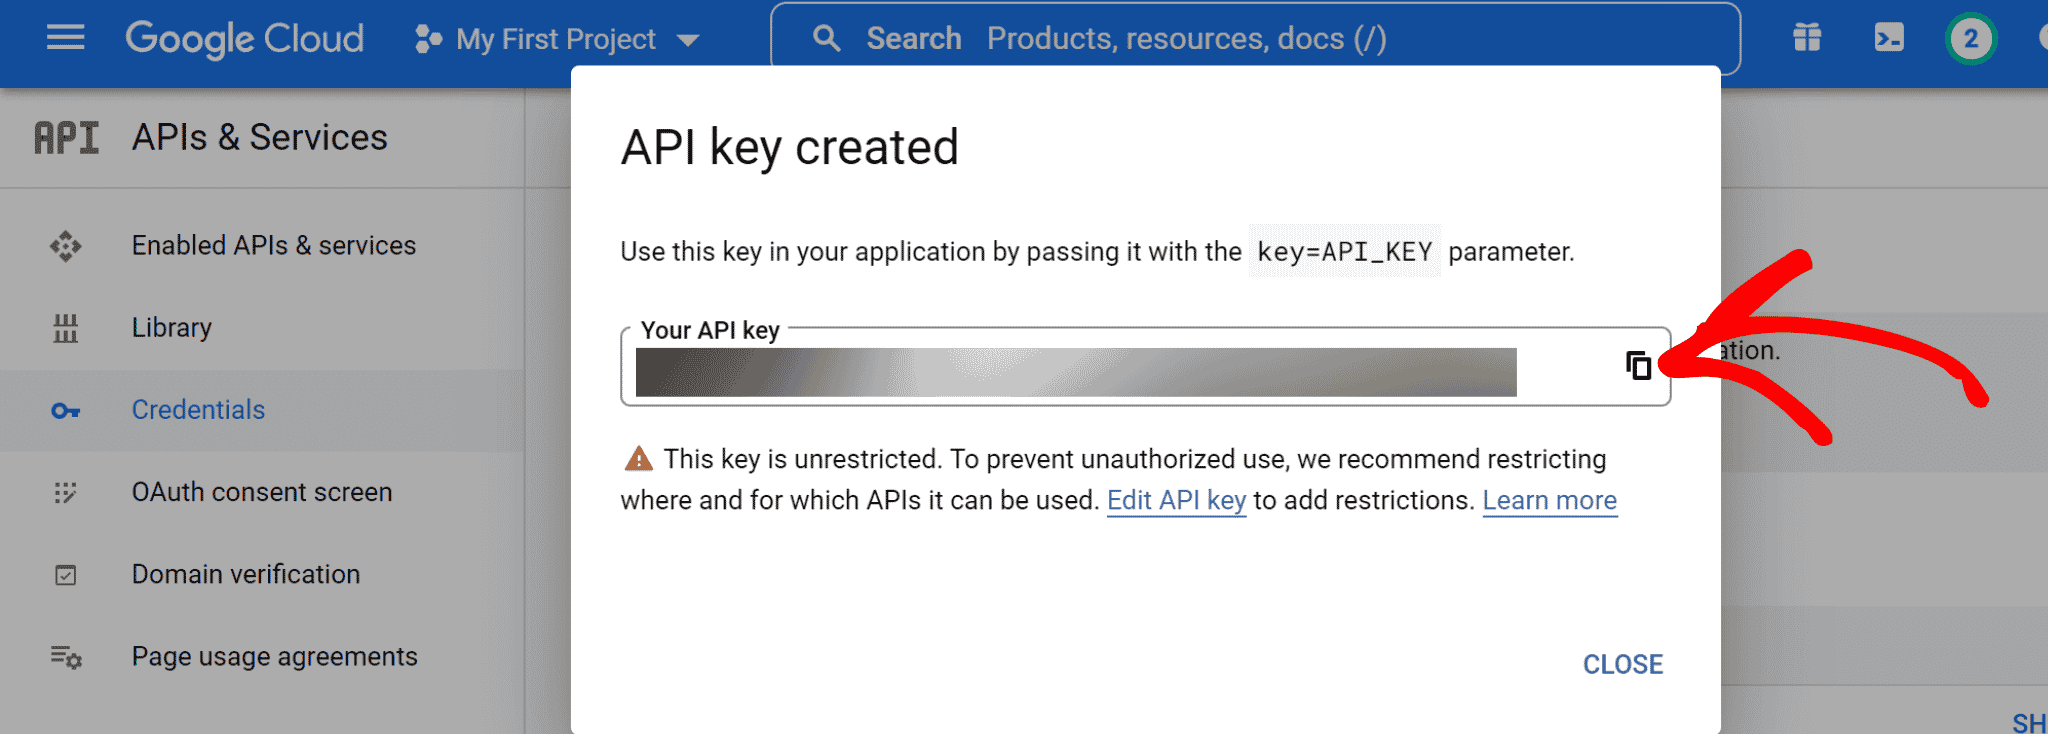 YouTube API Key Created